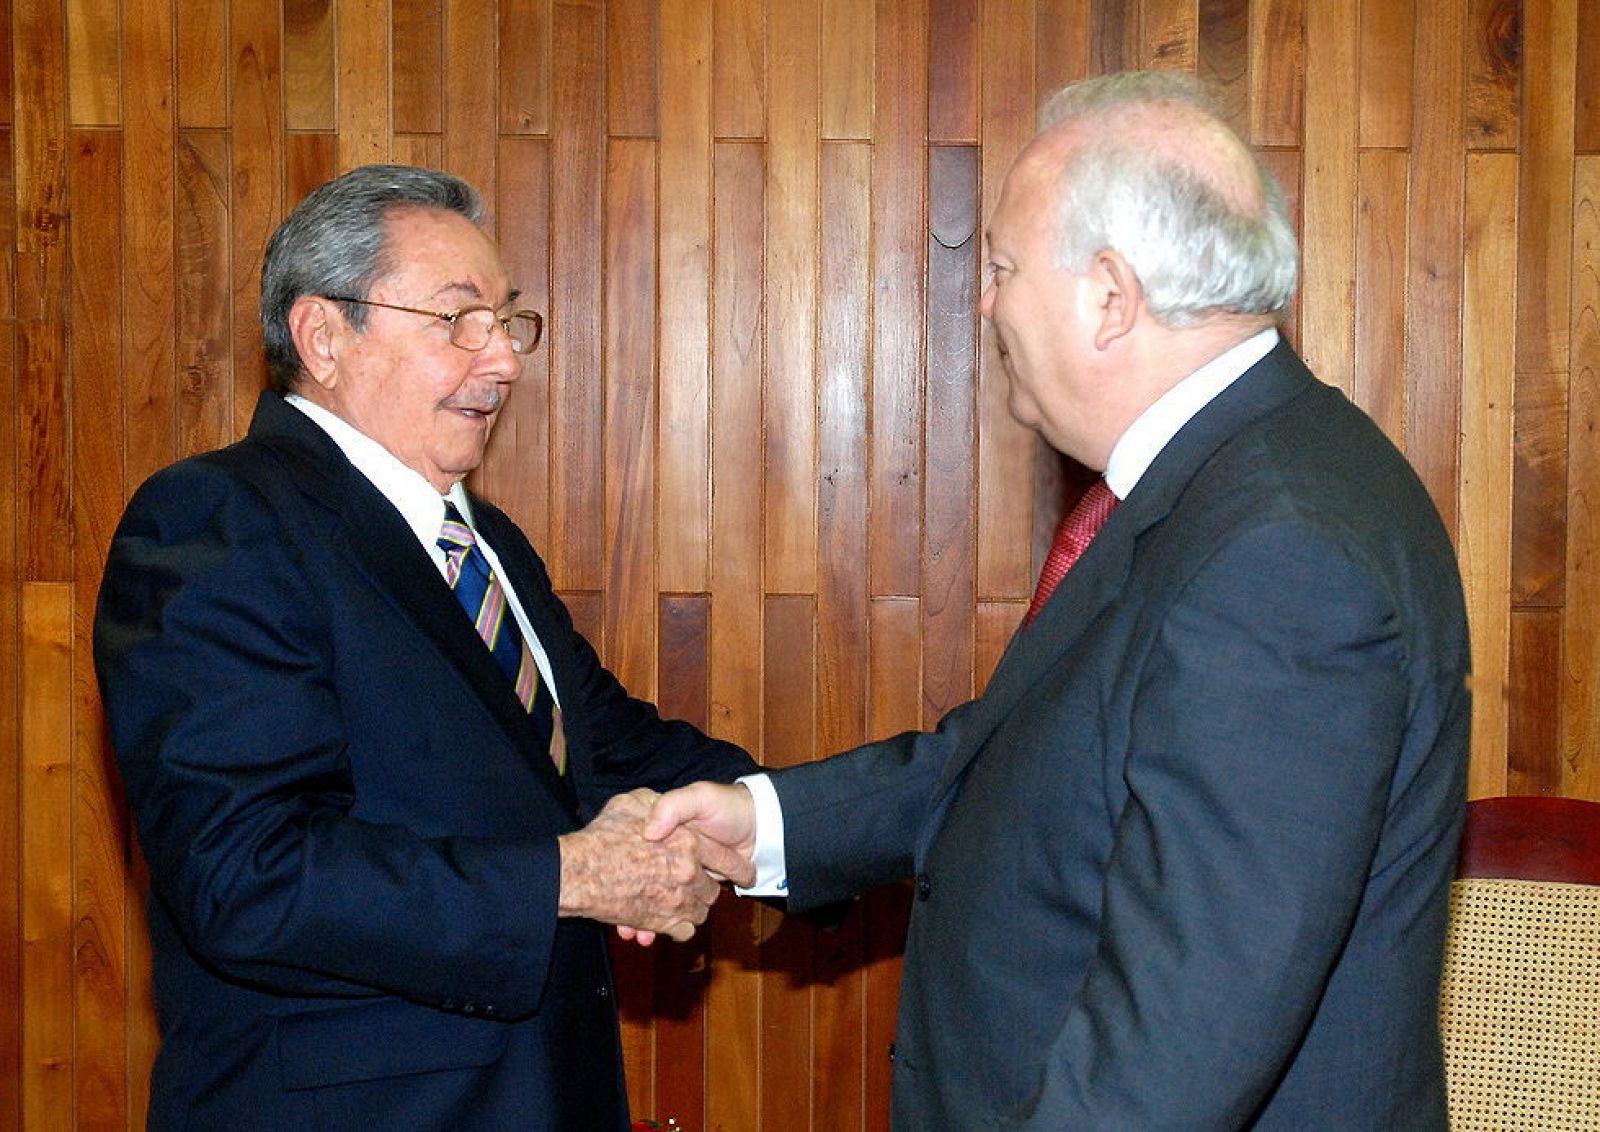 Foto cedida de la entrevista sostenida entre Castro (i) y Moratinos en octubre de 2009